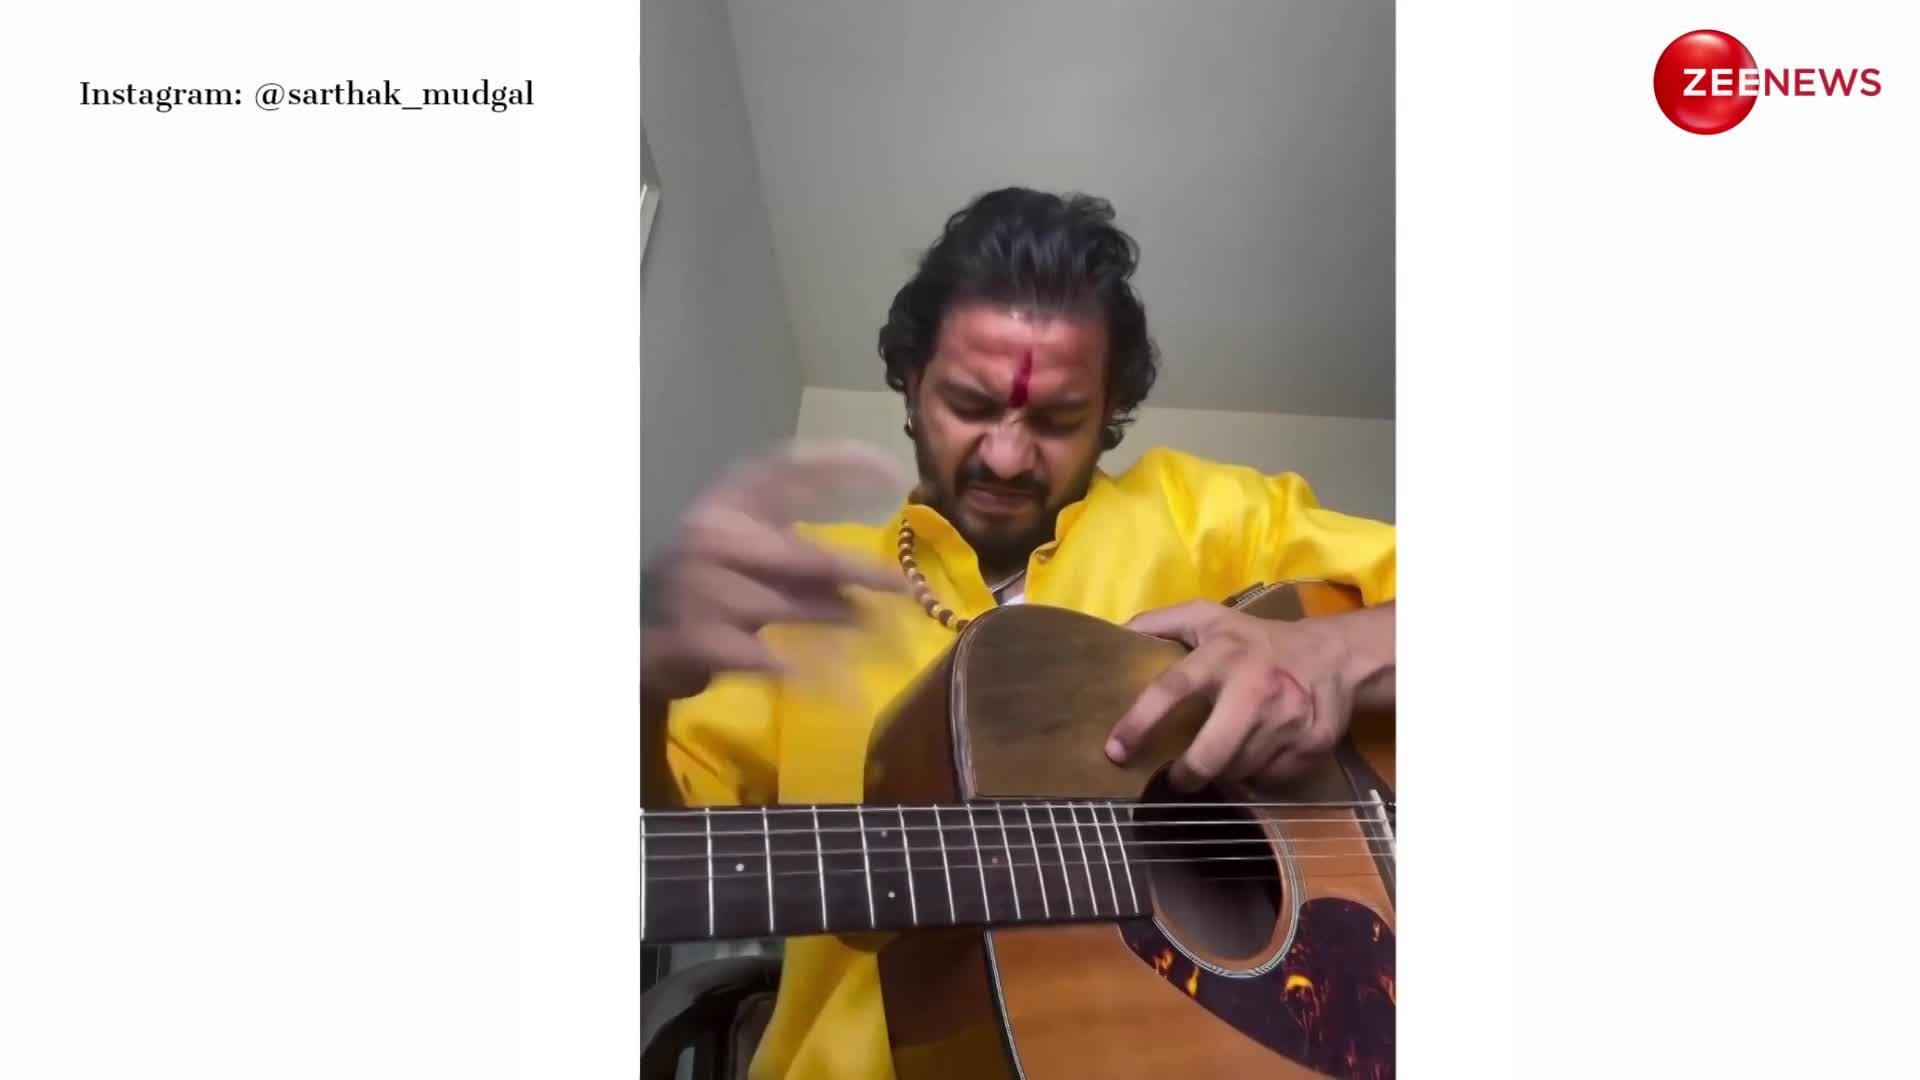 शख्स ने गिटार पर कुछ यूं बजाया 'शिव तांडव' देख उड़ जाएगी नींद, लोग बोले- भारत में ही मिल सकता है ऐसा टैलेंट